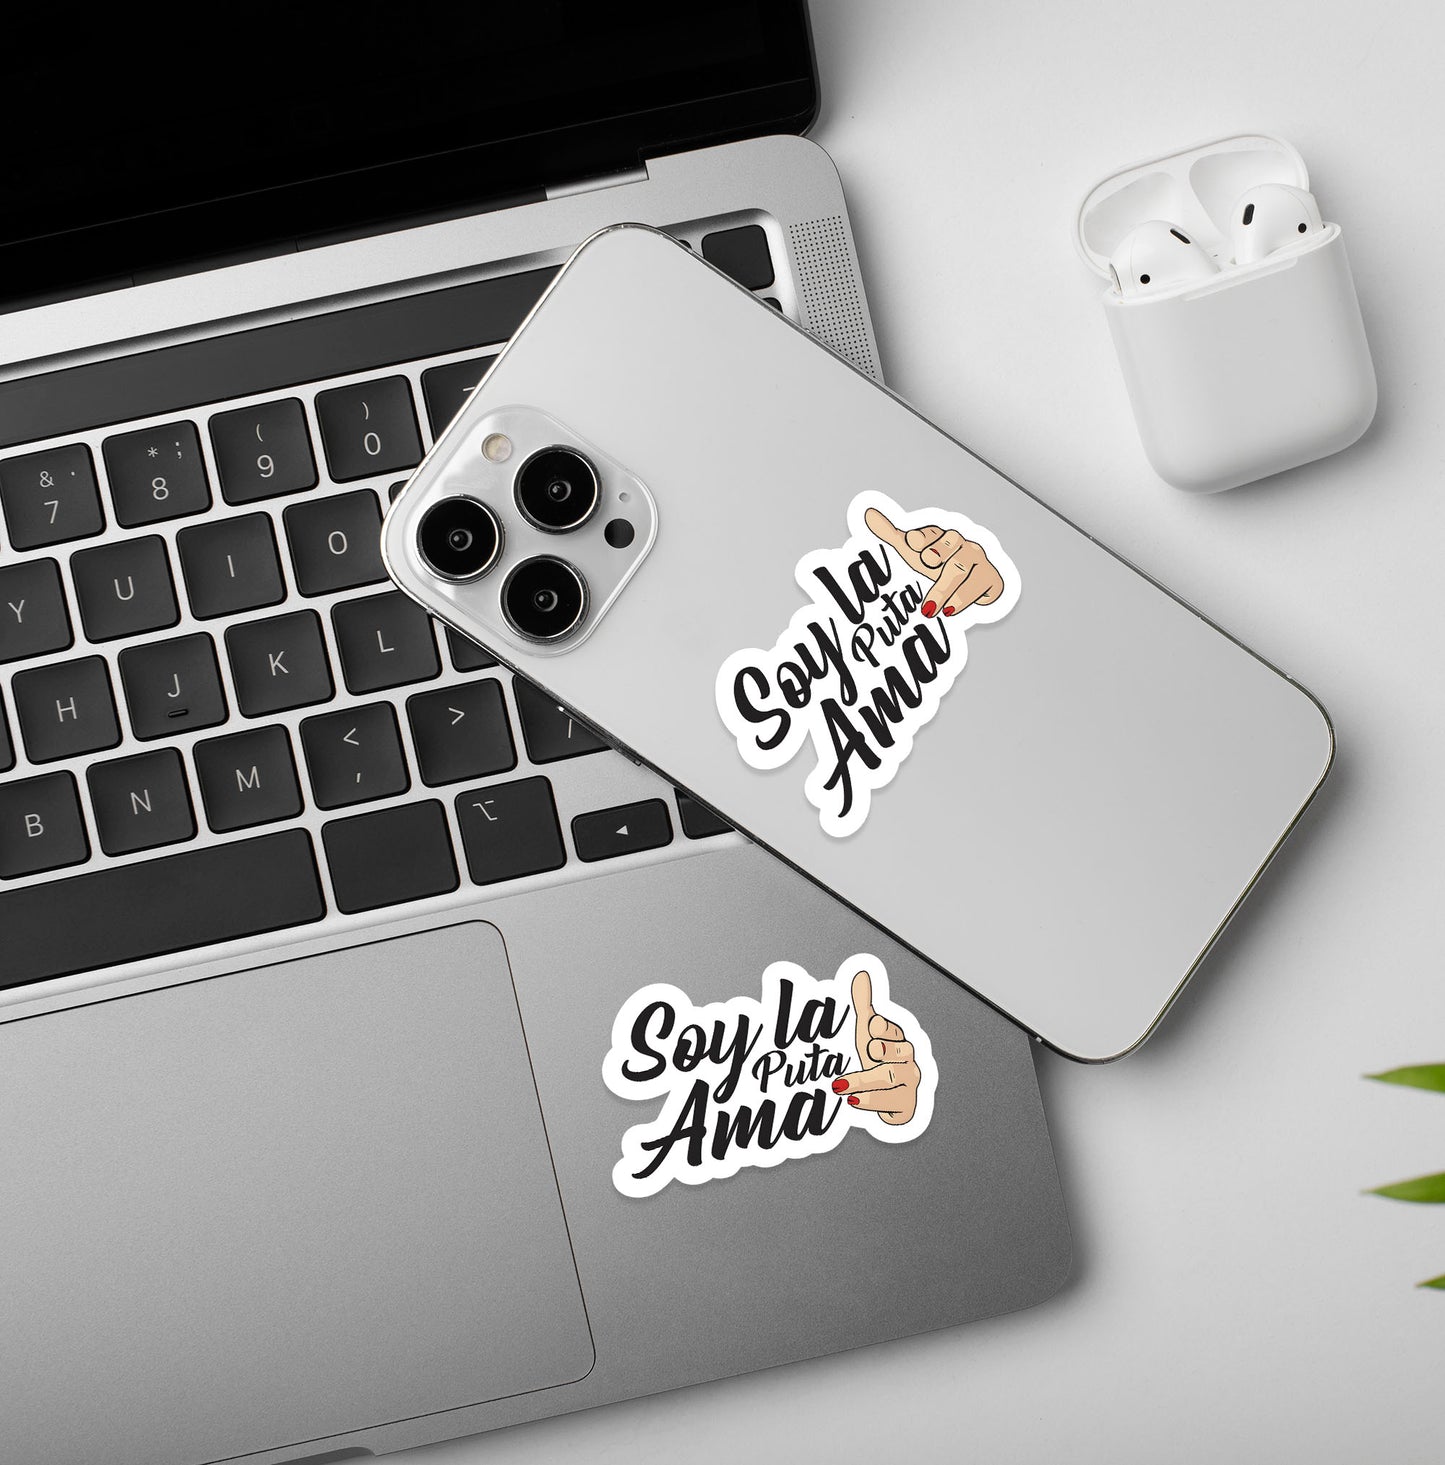 Soy La Puta Ama - Laptop / Mobile Sticker